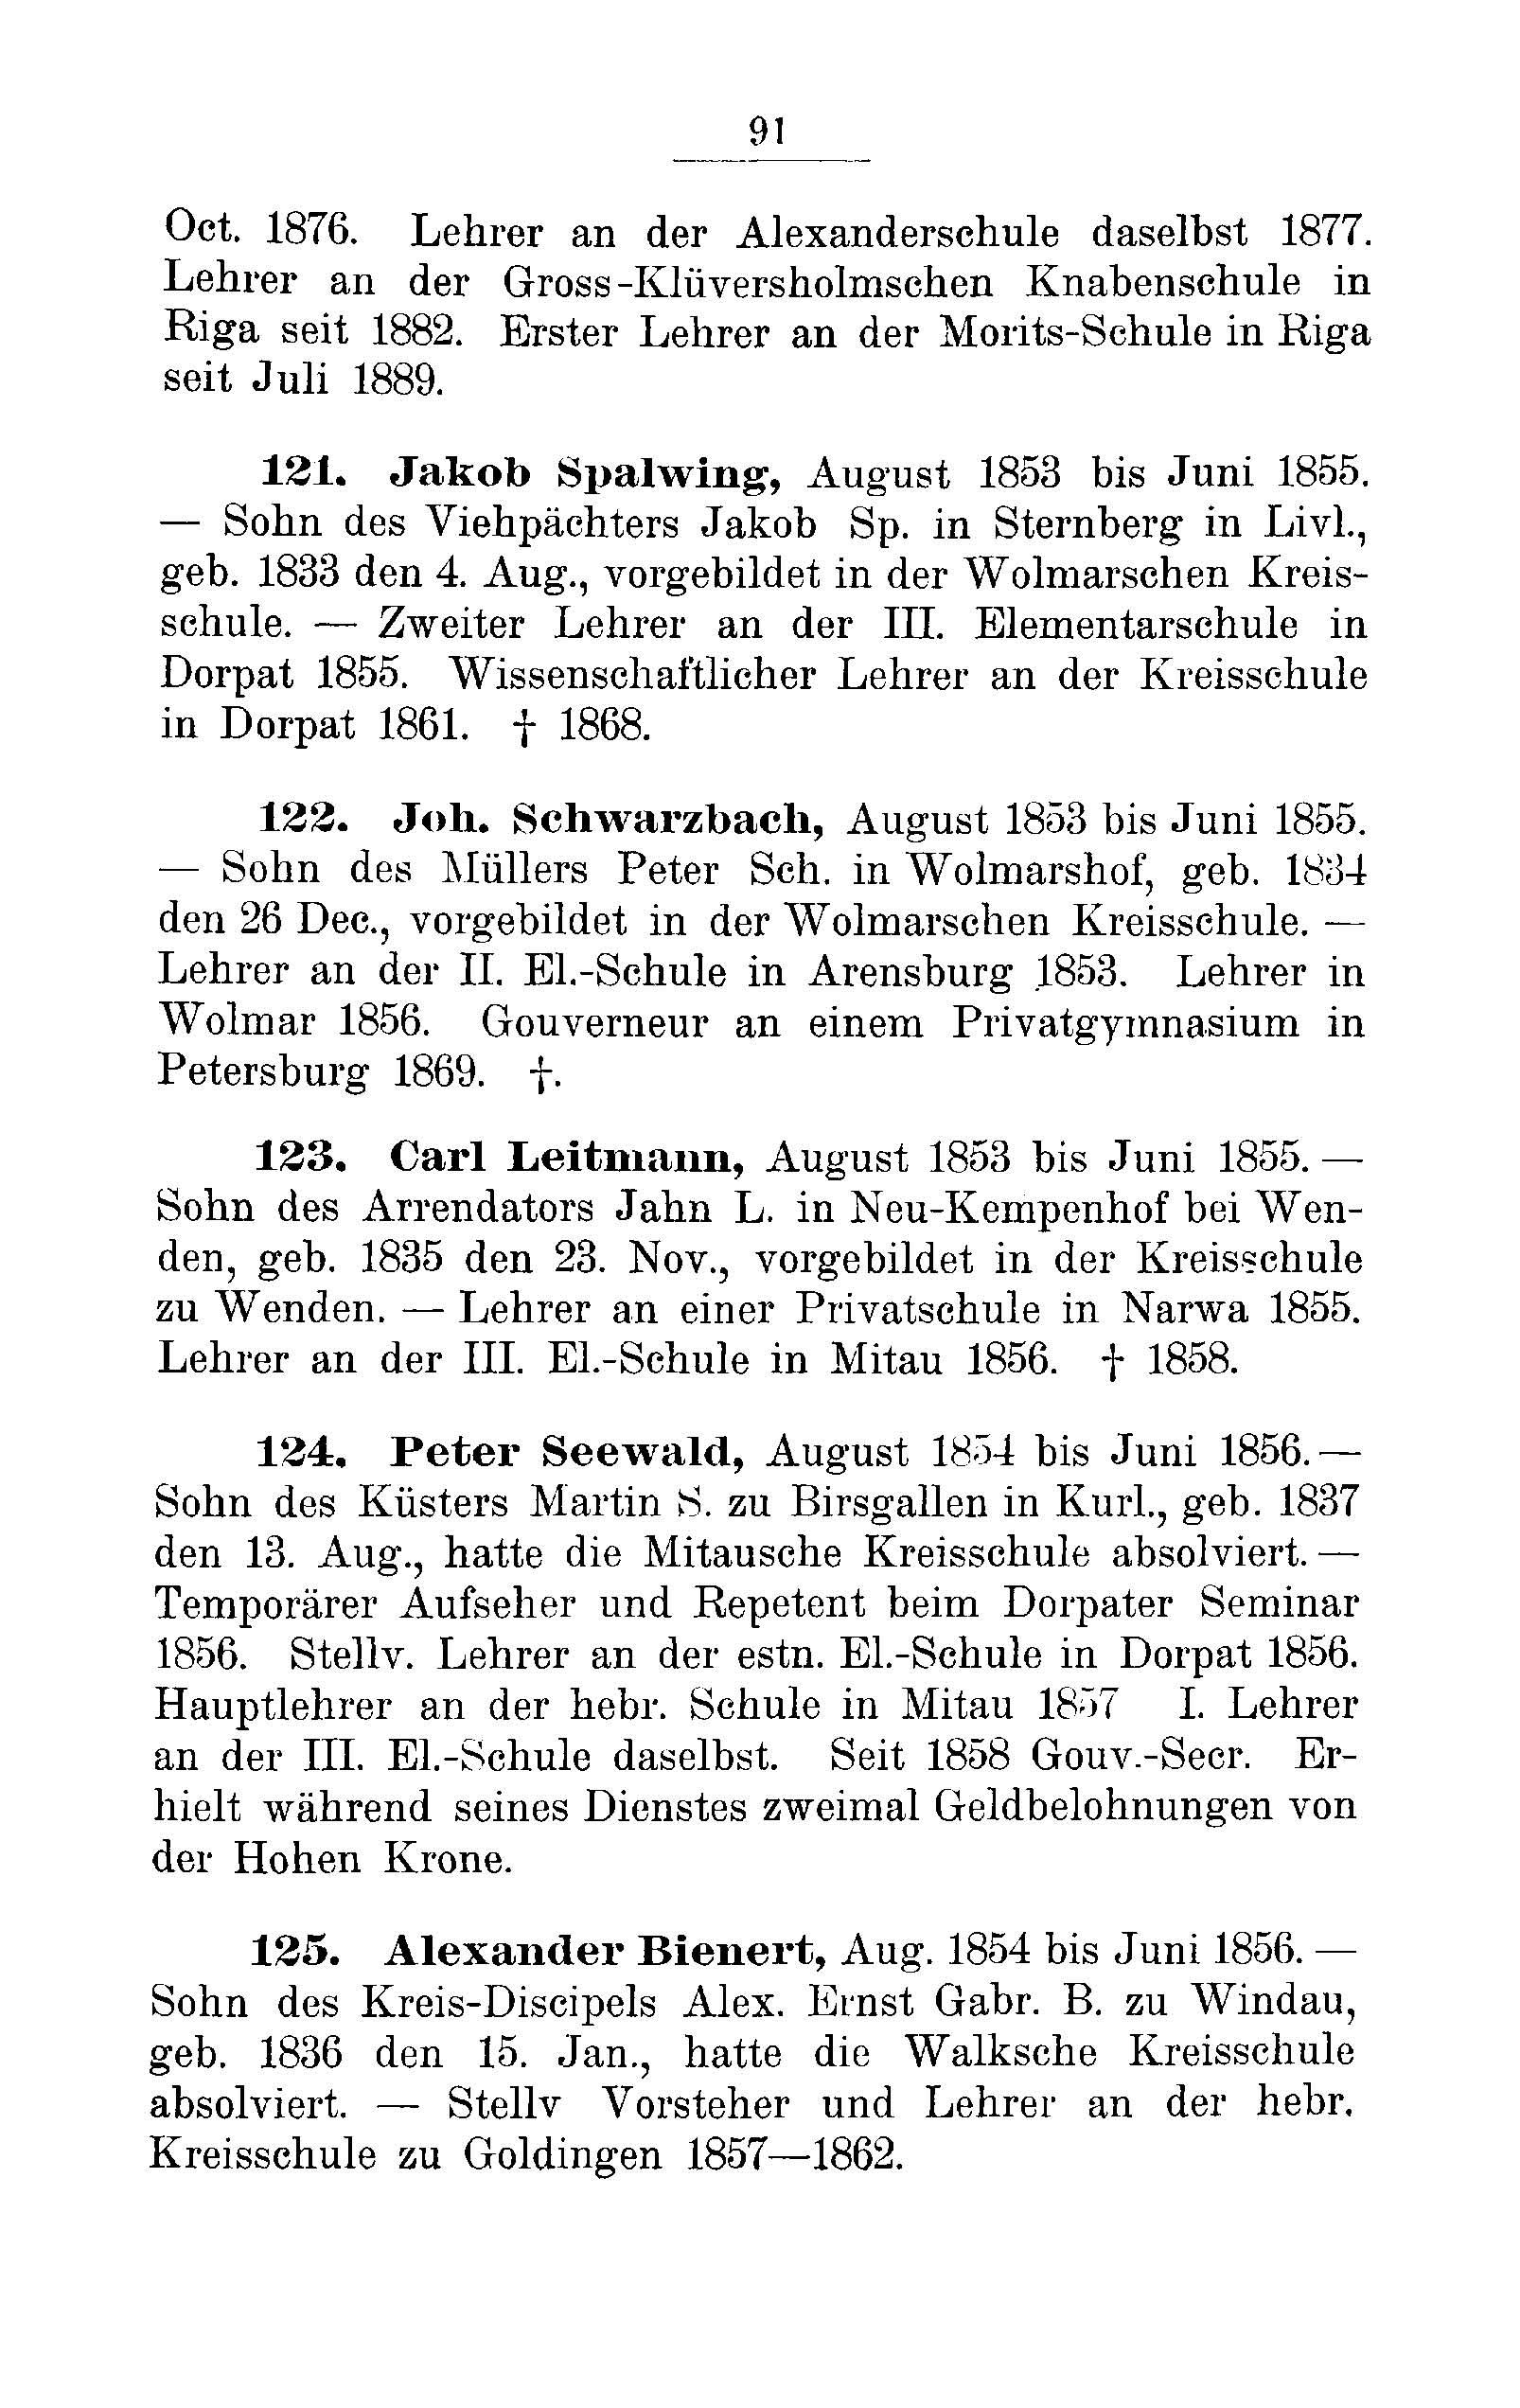 Das Erste Dorpatsche Lehrer-Seminar (1890) | 94. Main body of text